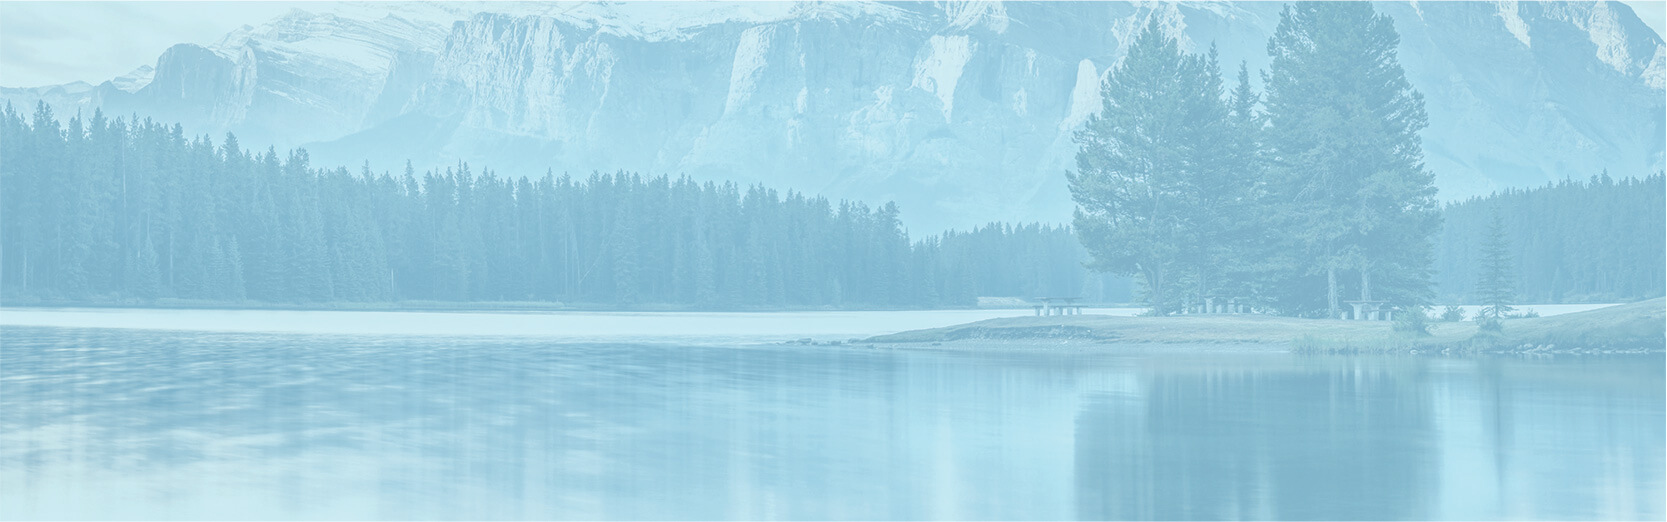 Paysage relaxant de lac, de forêt et de sommets enneigés avec filtre bleu.